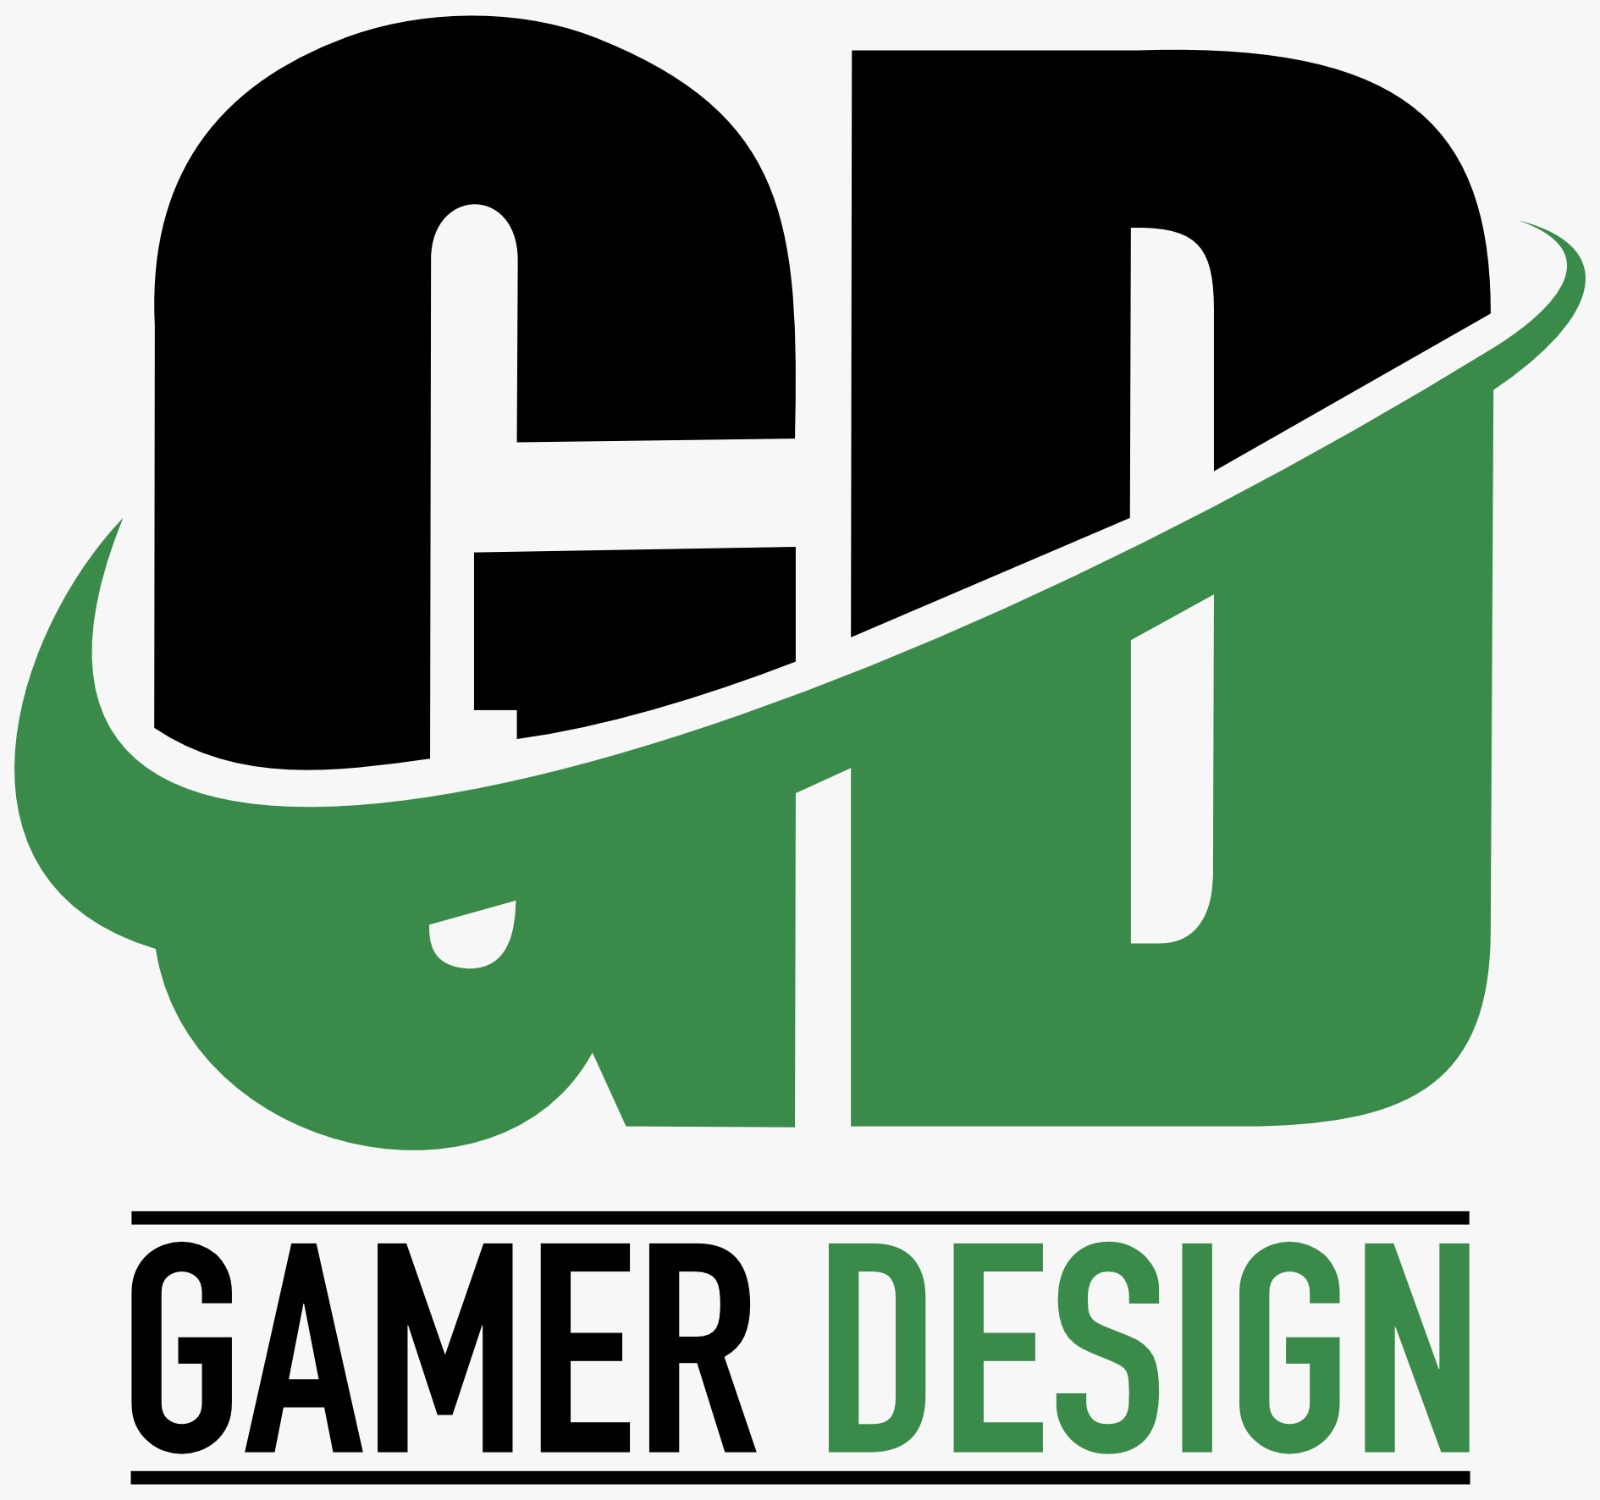 Gamer Design